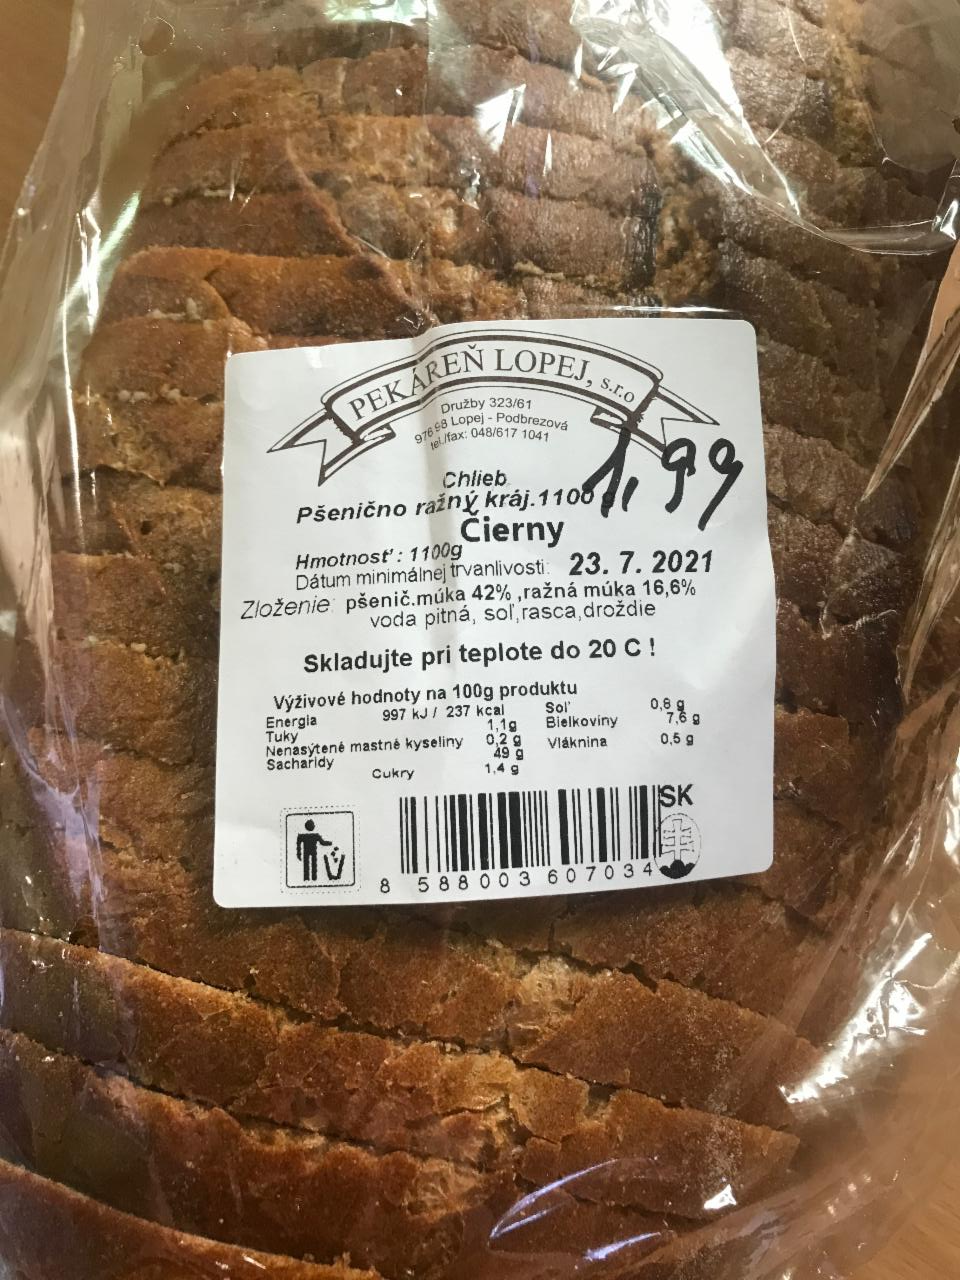 Fotografie - chlieb pšenično ražný krájaný čierny pekáreň Lopej